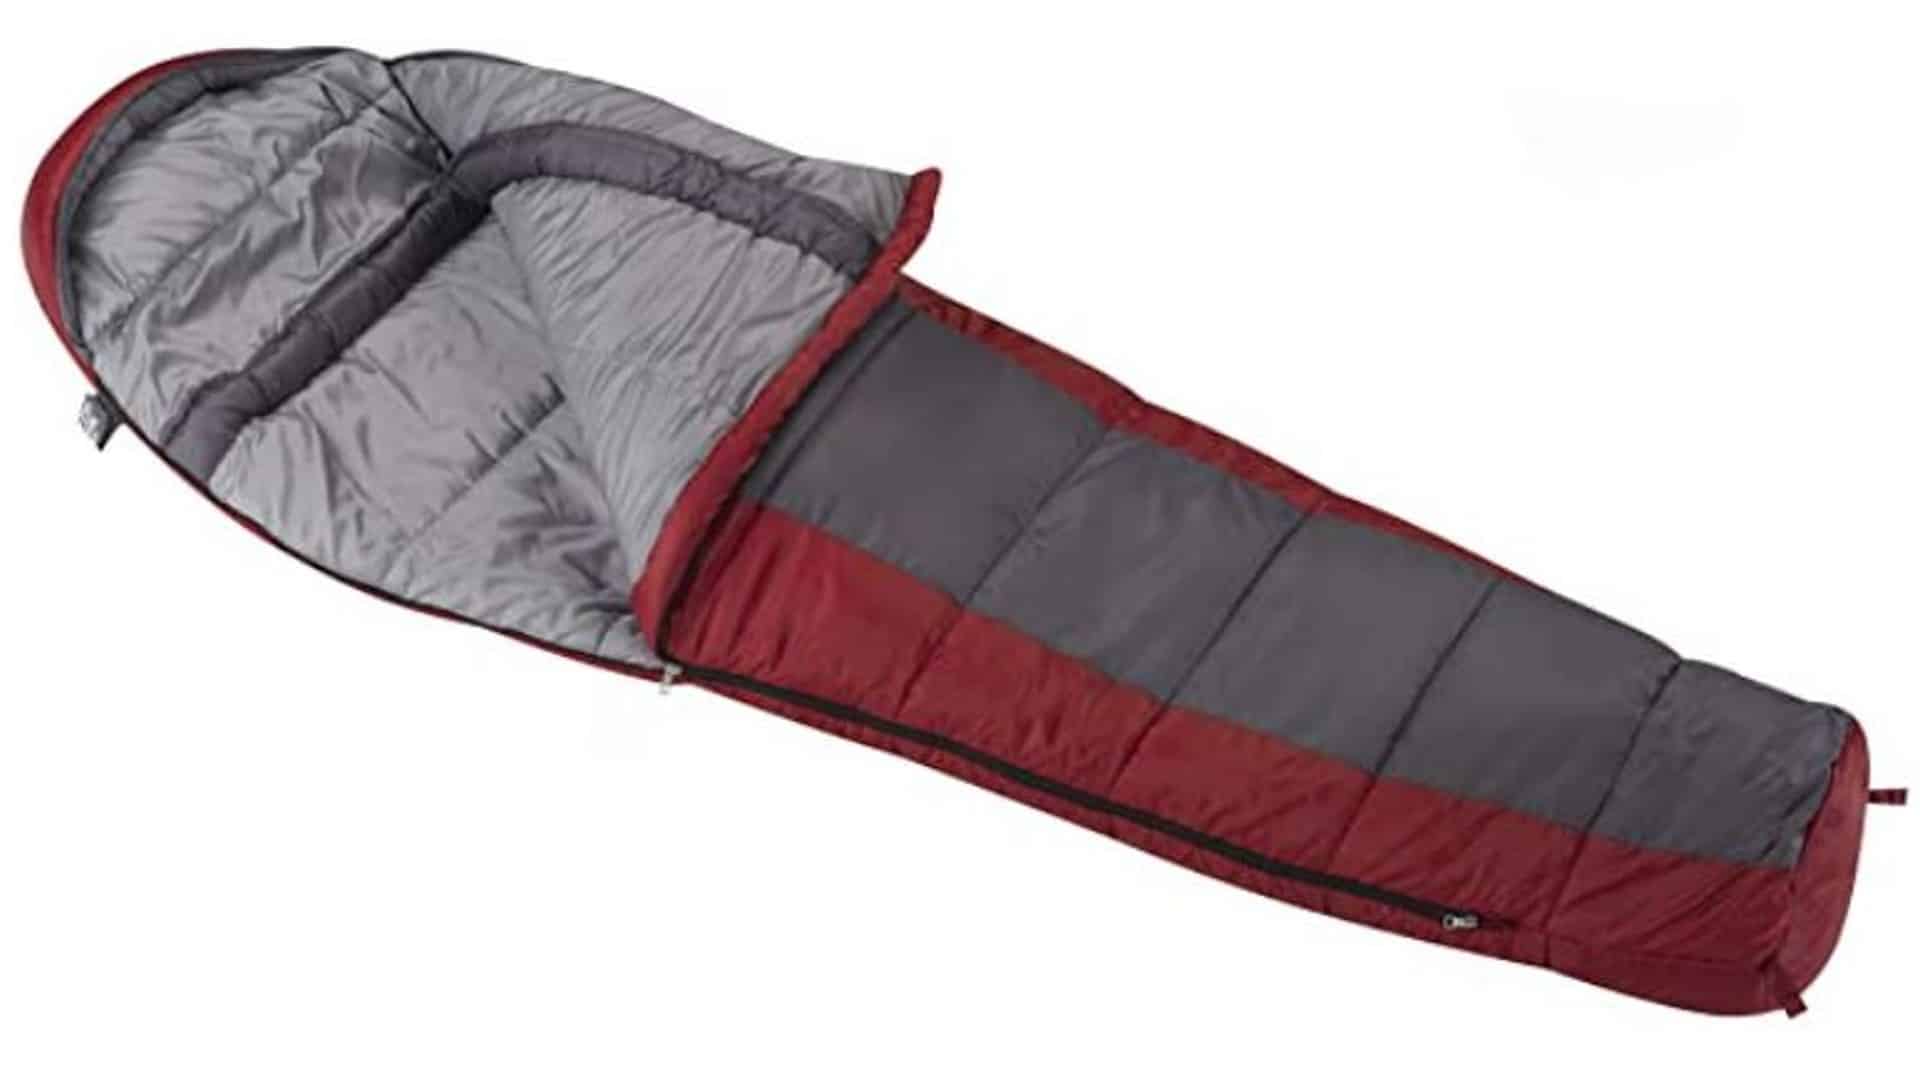 Wenzel windy sleeping bag